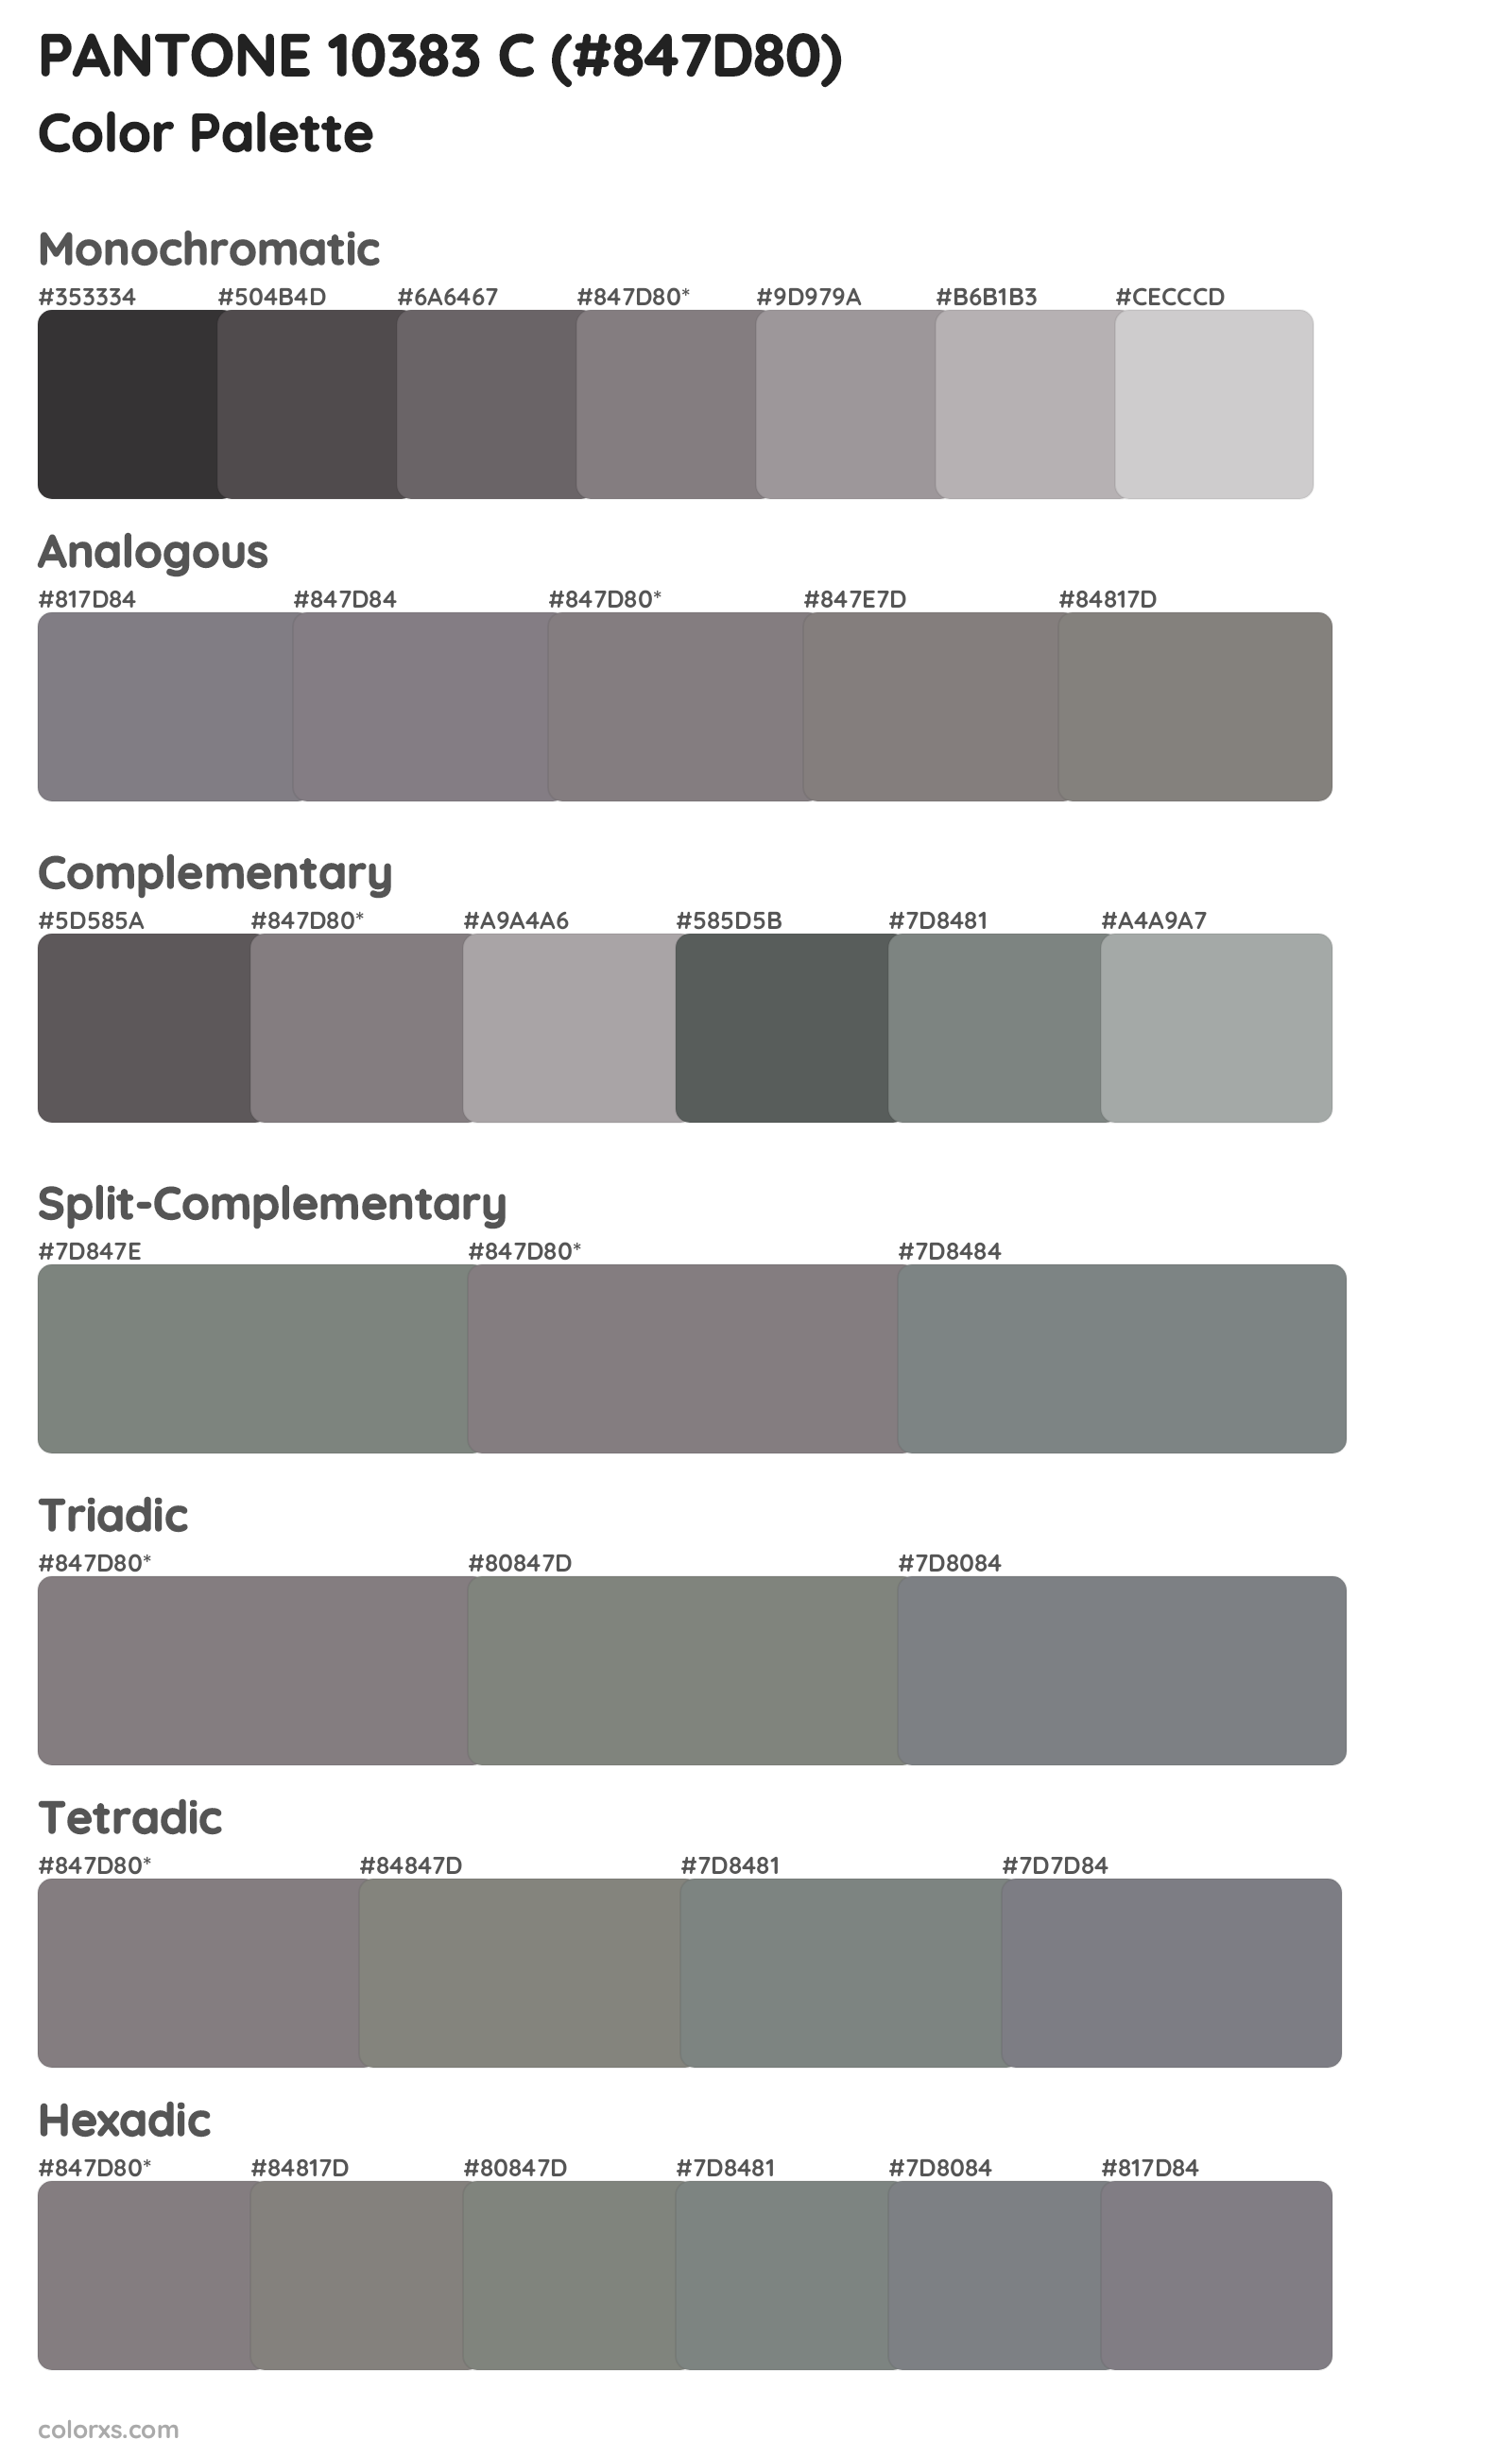 PANTONE 10383 C Color Scheme Palettes